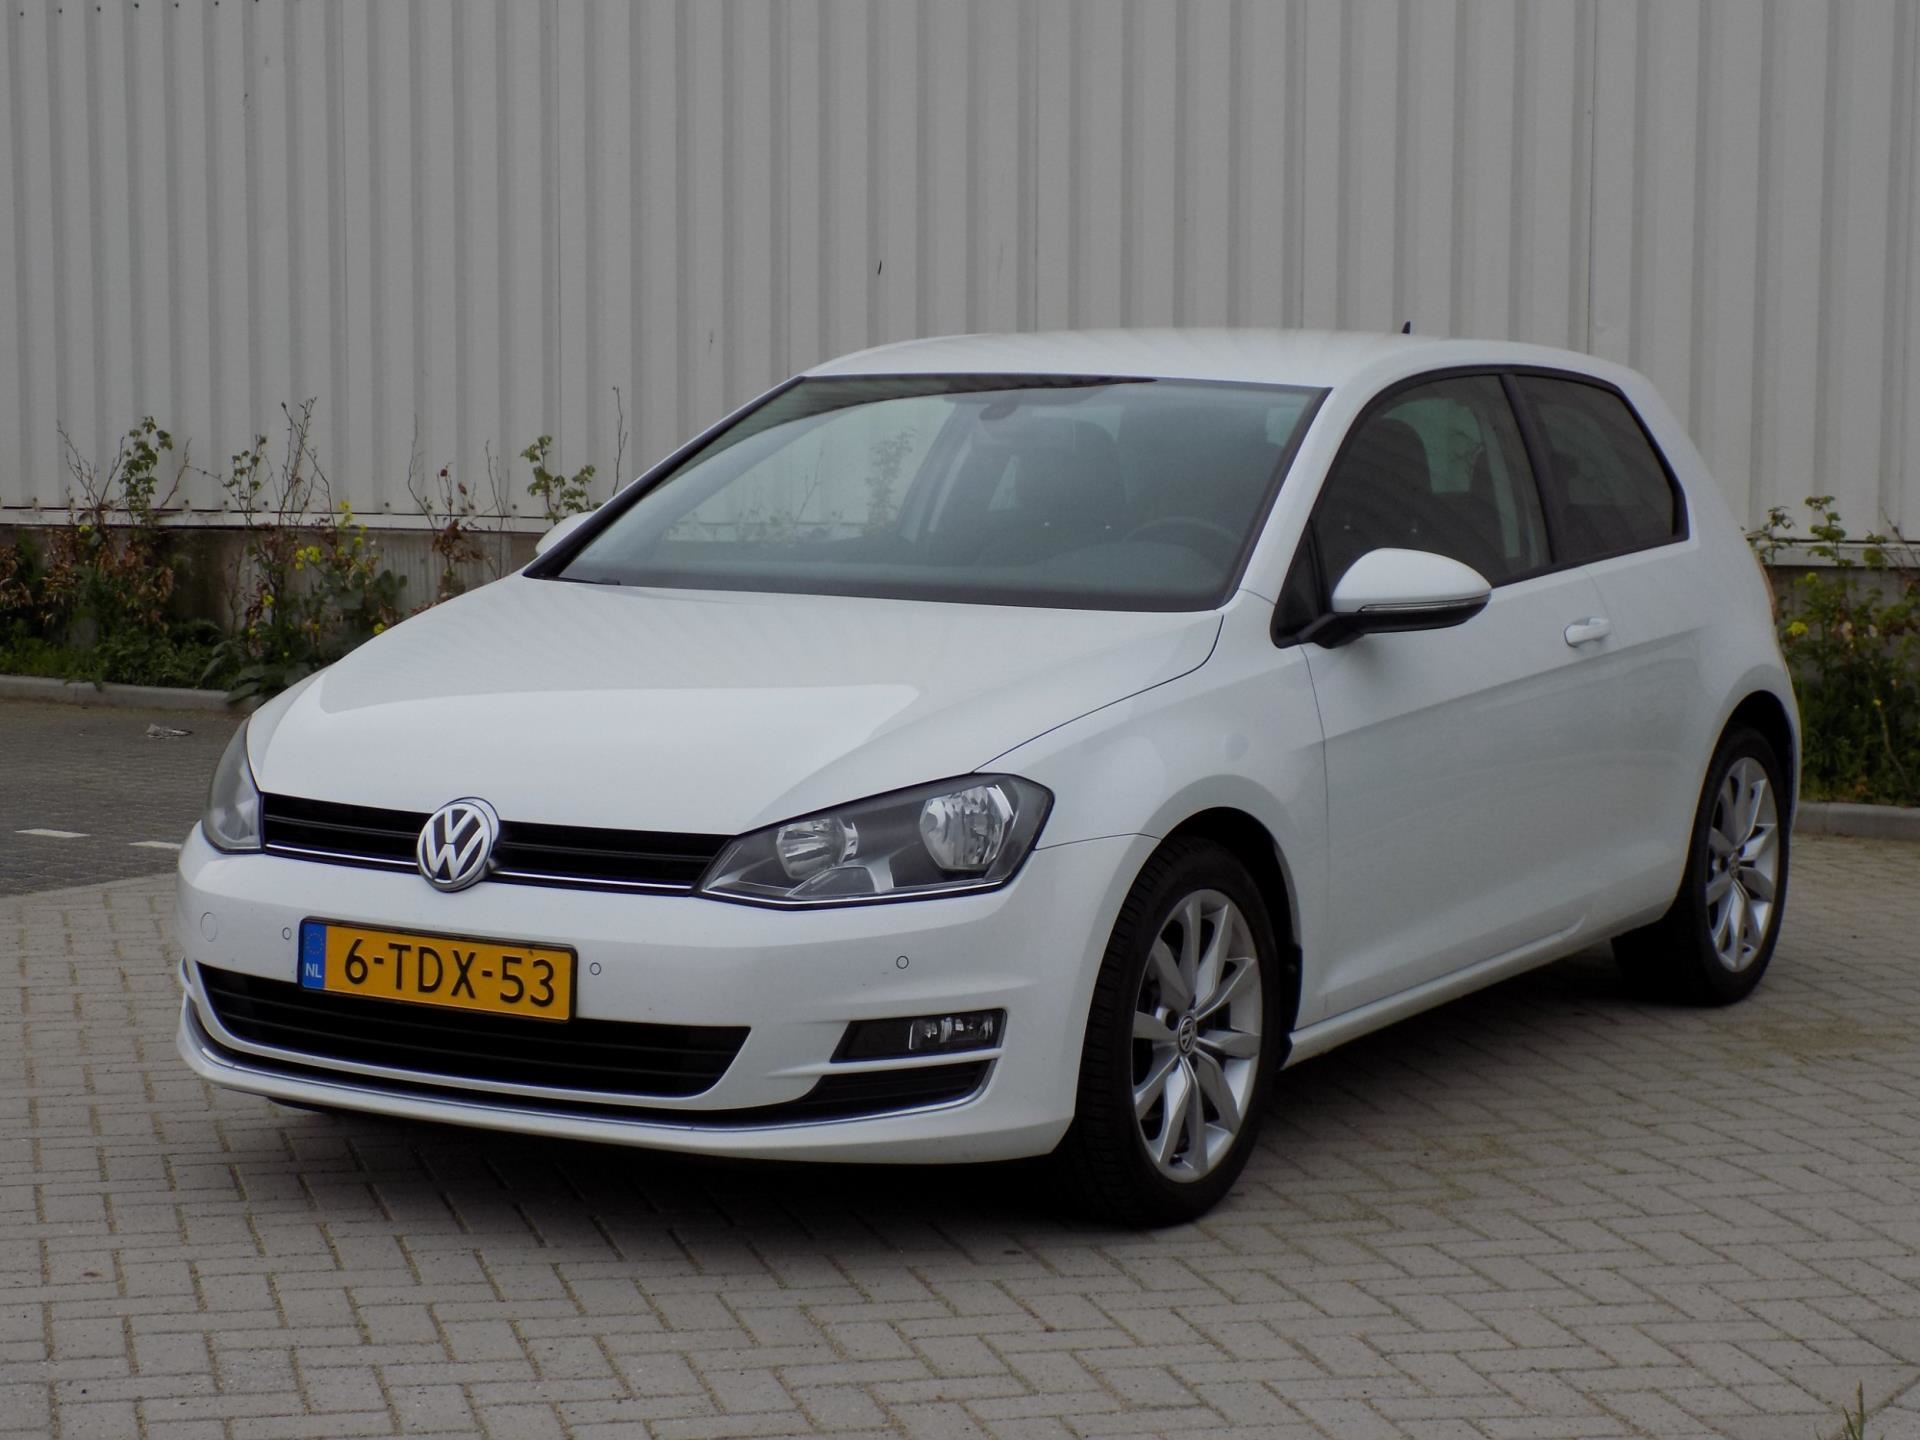 Volkswagen Golf occasion - van Dijk auto's